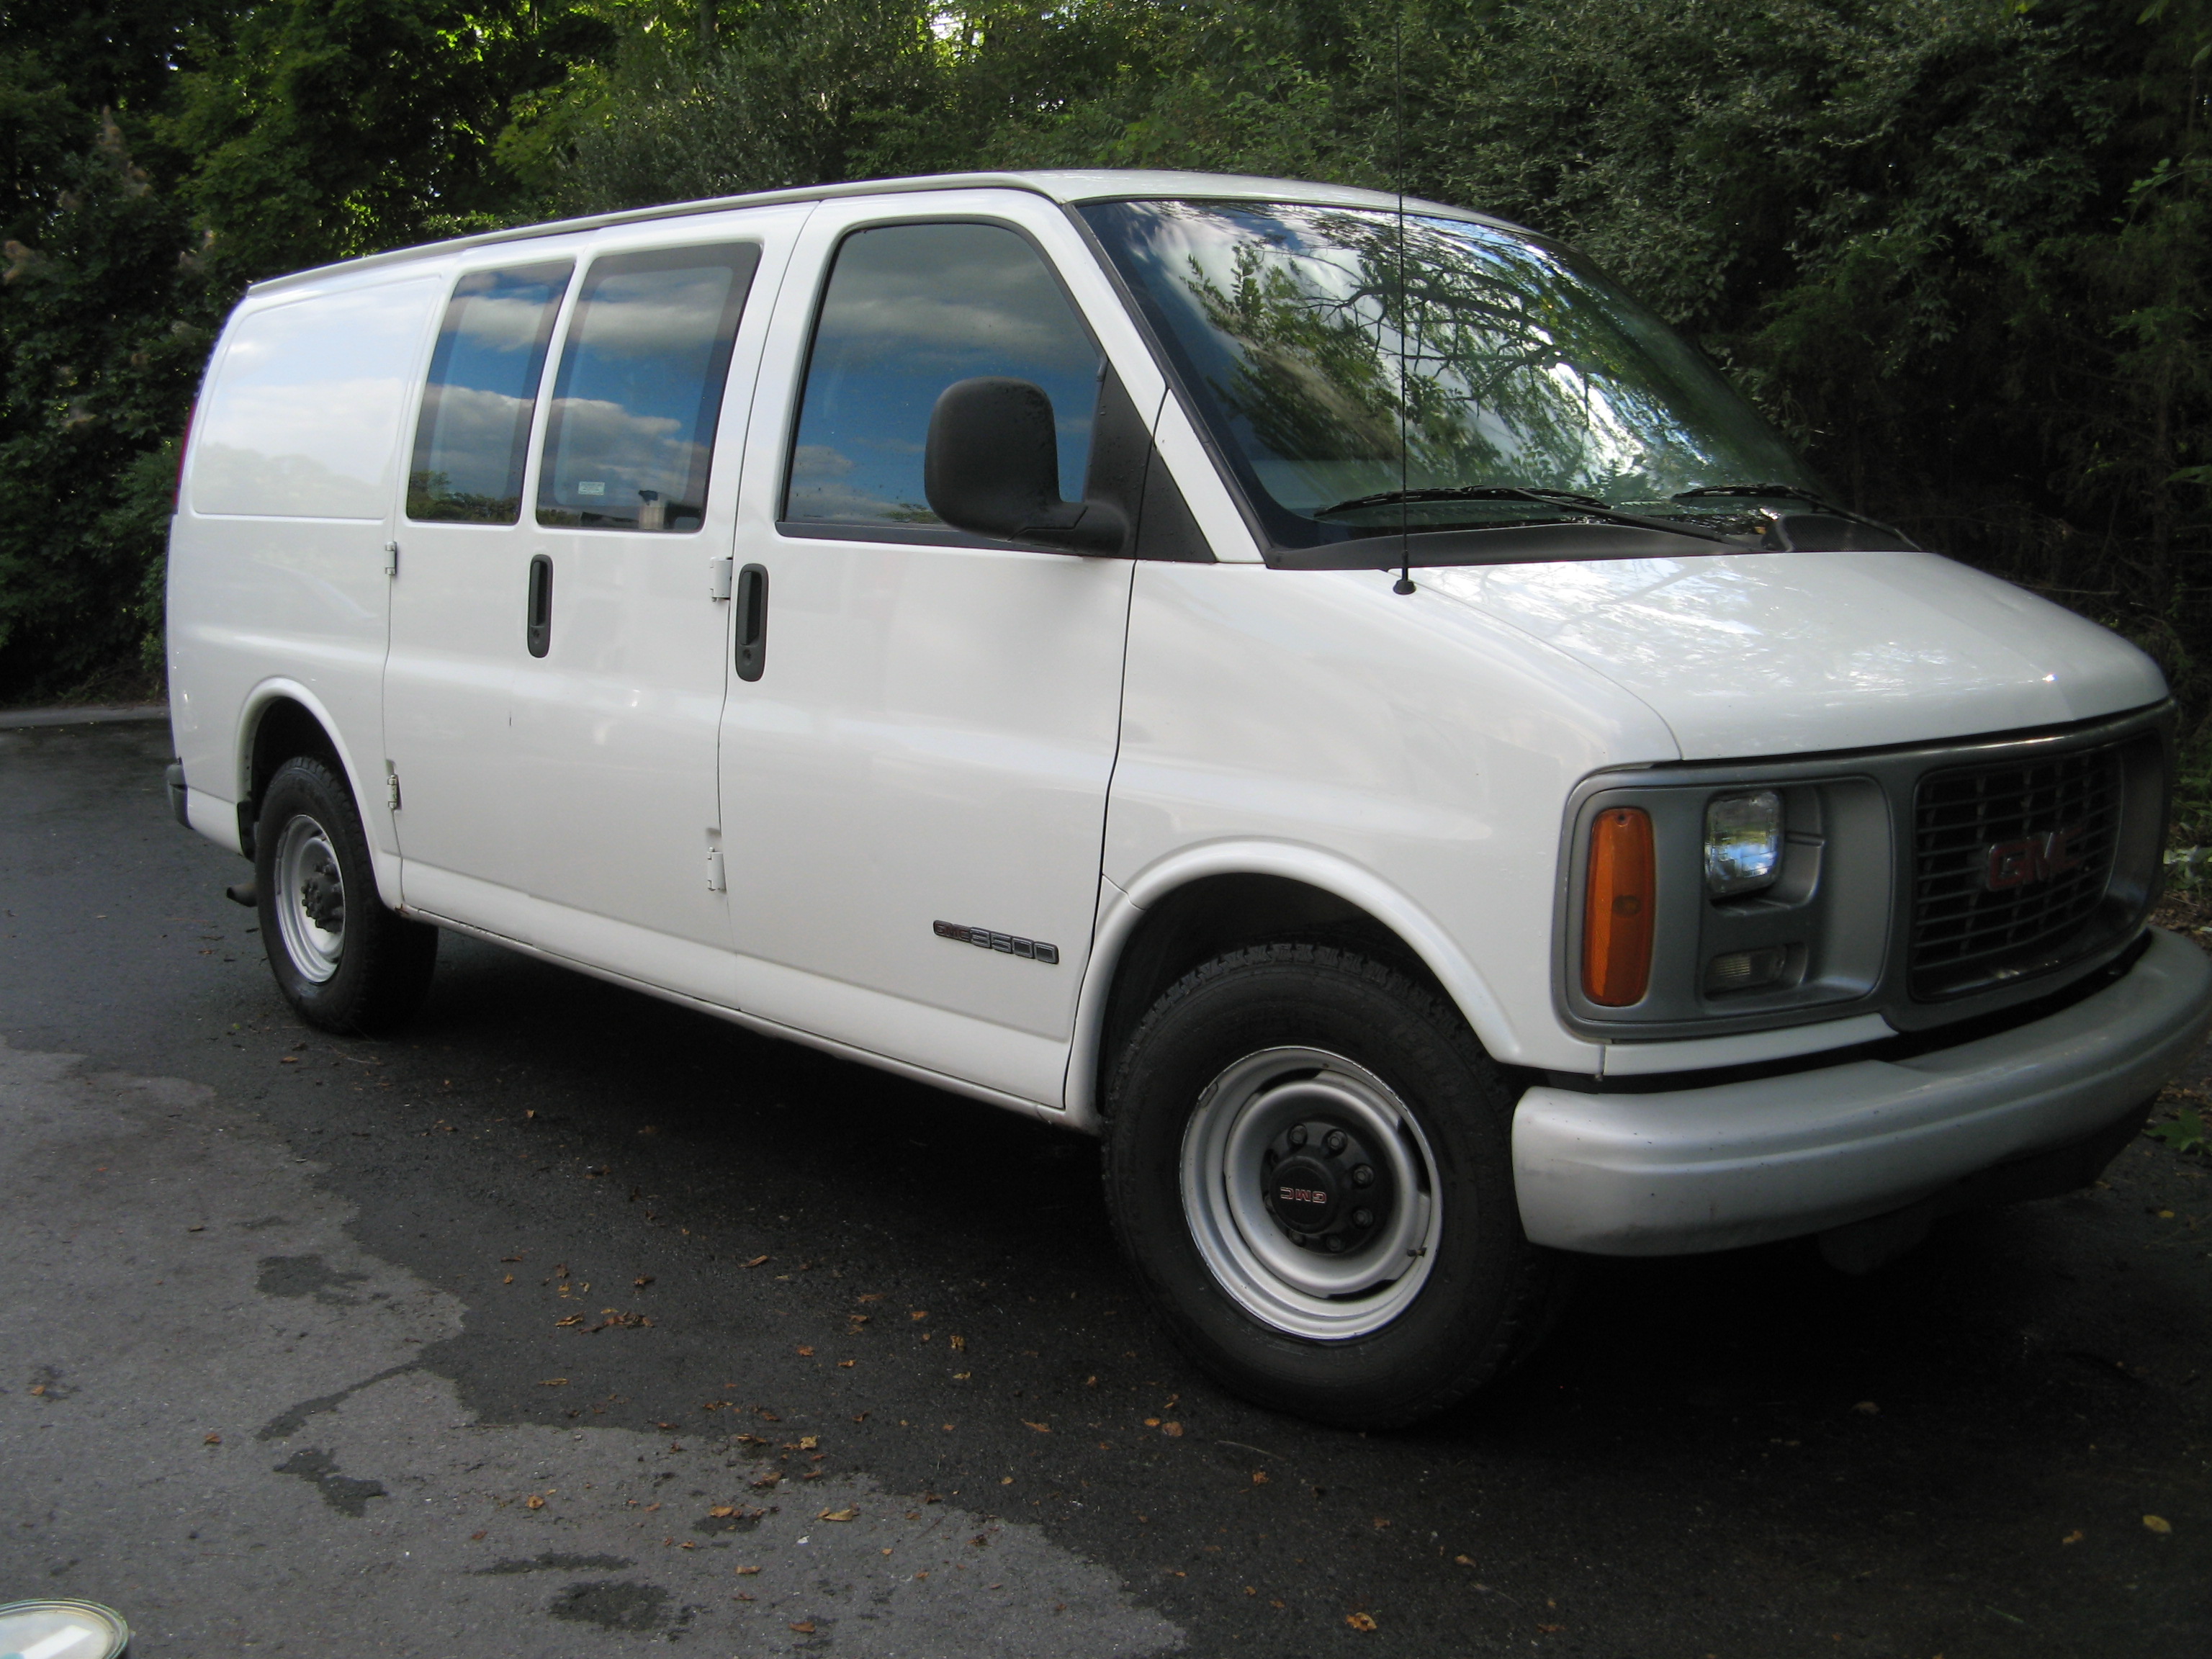 all white vans for sale